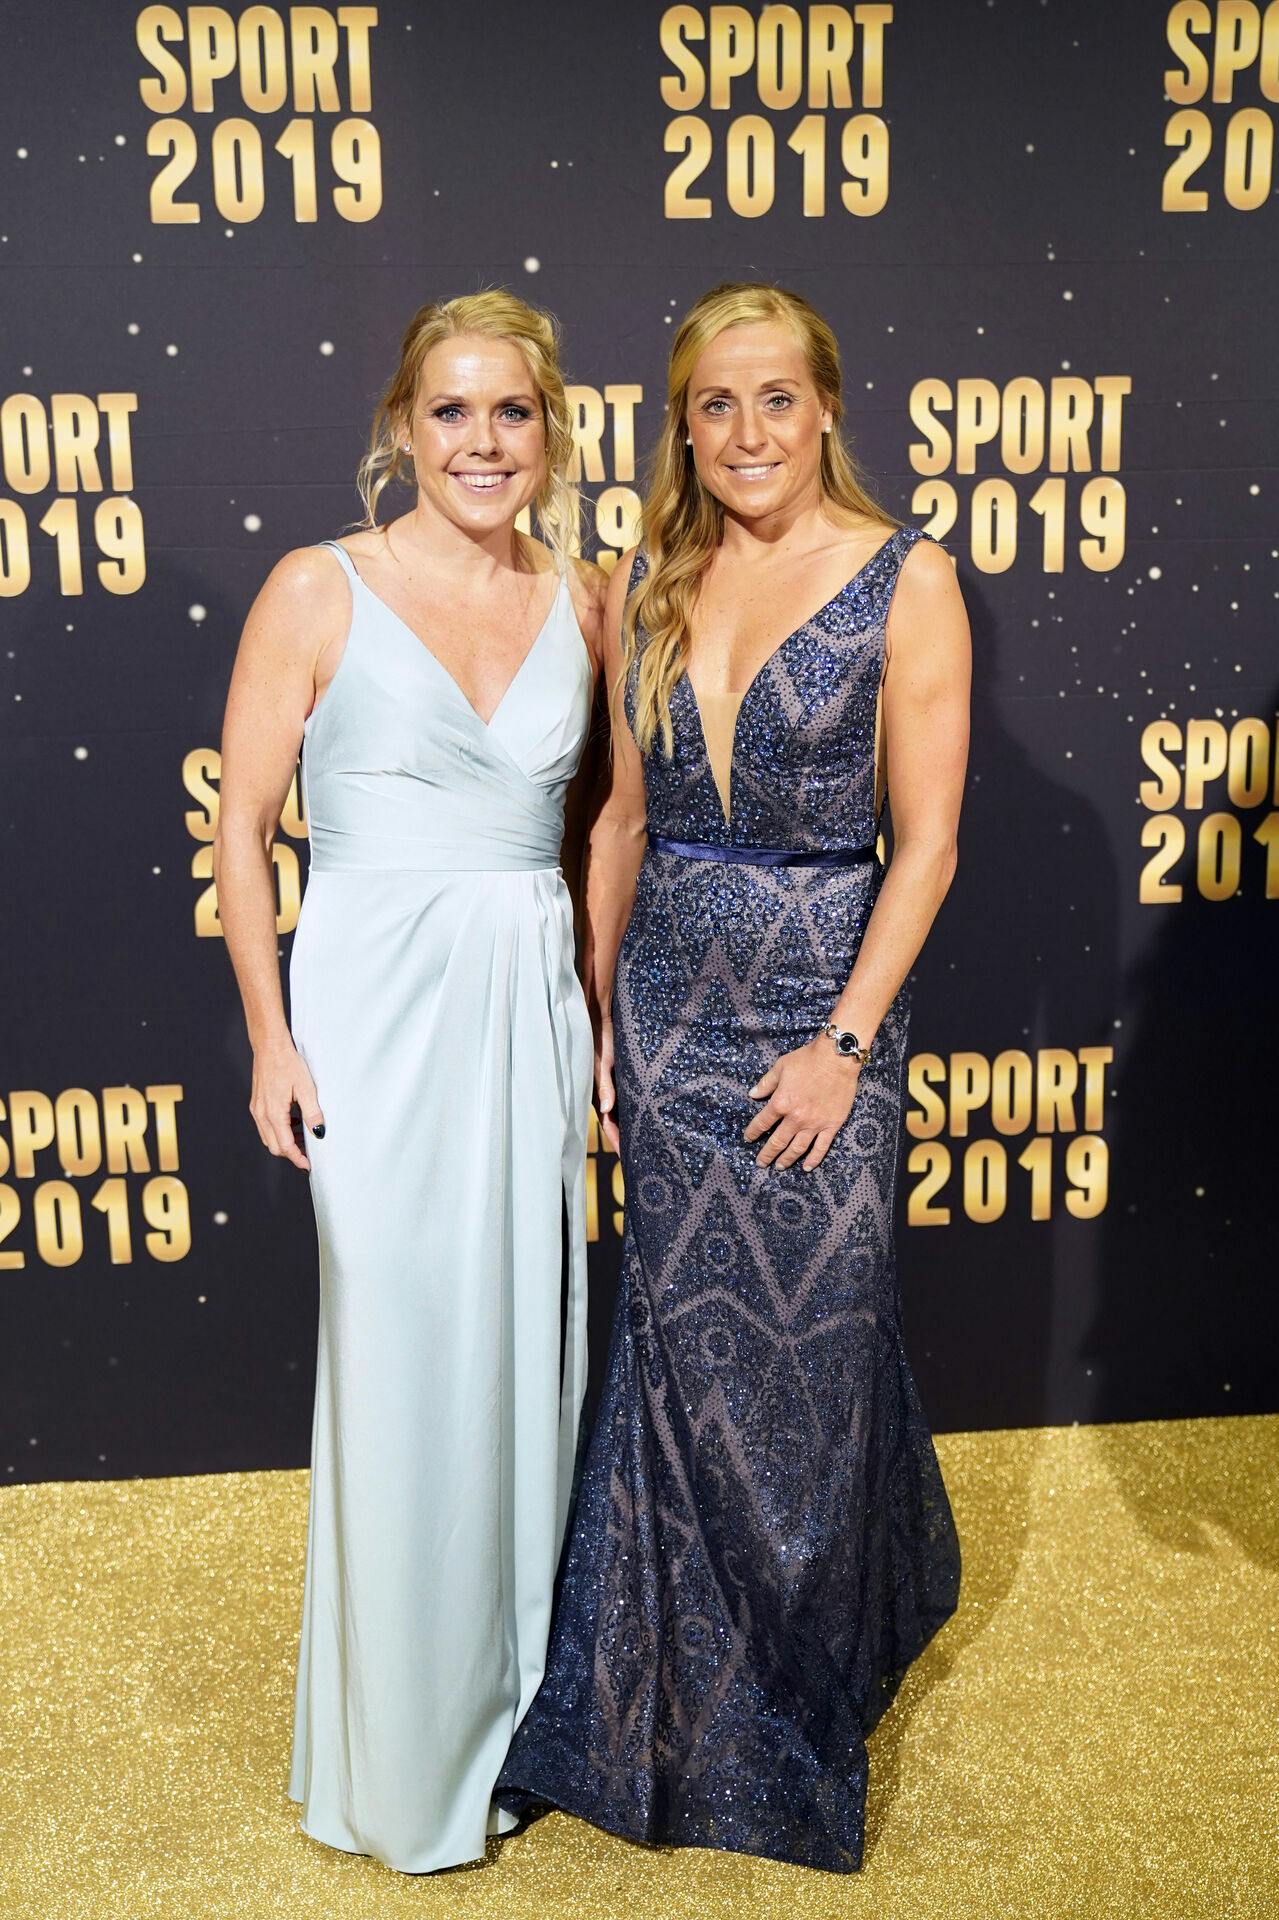 Triatleterne Camille Pedersen og Michelle Vesterby (th) ankommer til Sport 2019 i Boxen i Herning lørdag den 4. januar 2020. . Nu er&nbsp;Michelle Vesterby dømt for tre måneders karantæne.